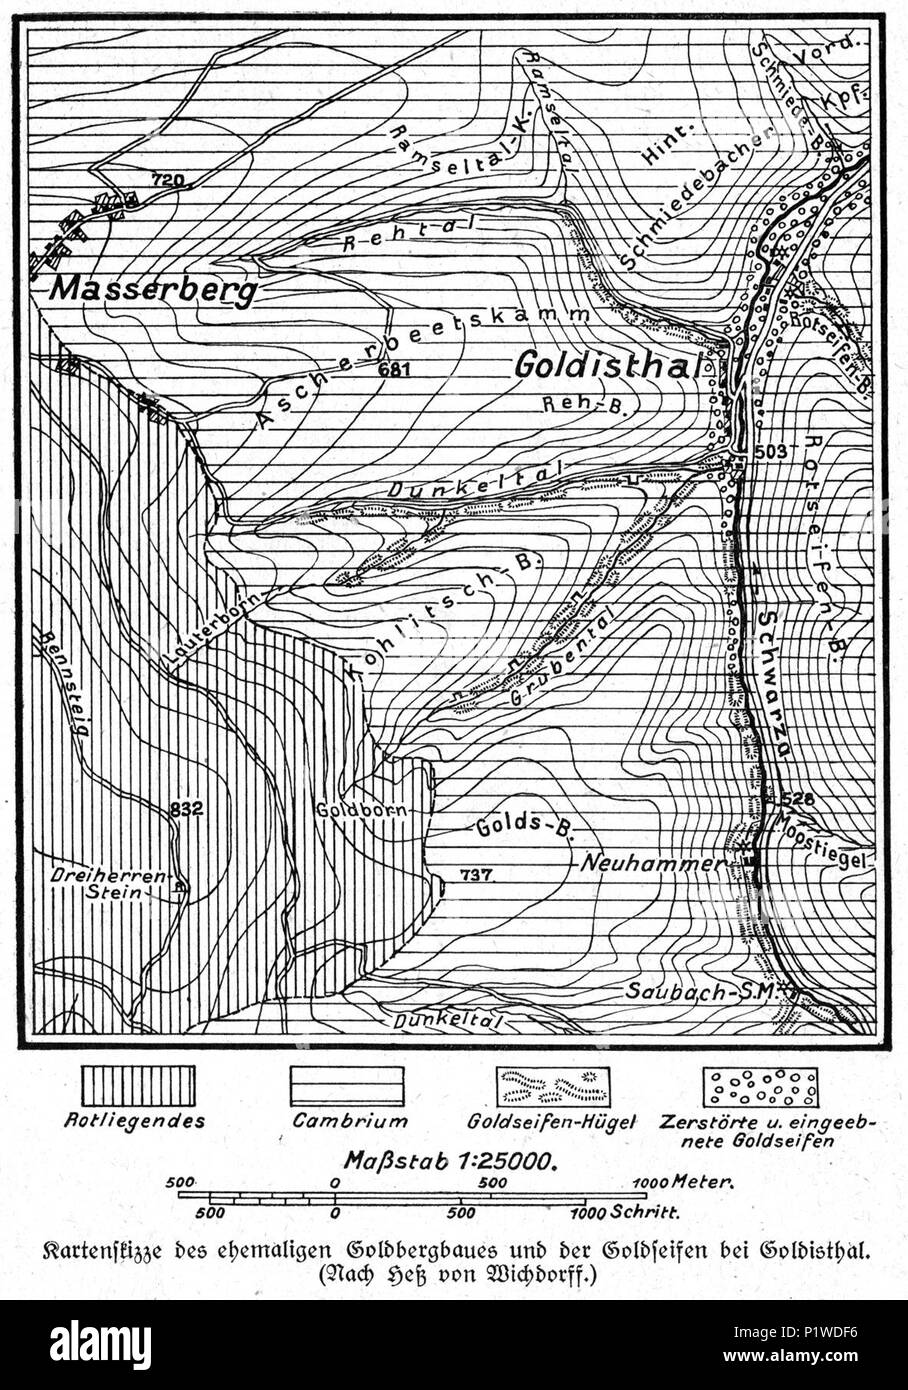 (1916) Lagekarte zum einstigen Goldbergbau um Goldisthal nach Hess v.Wichdorff. Stock Photo